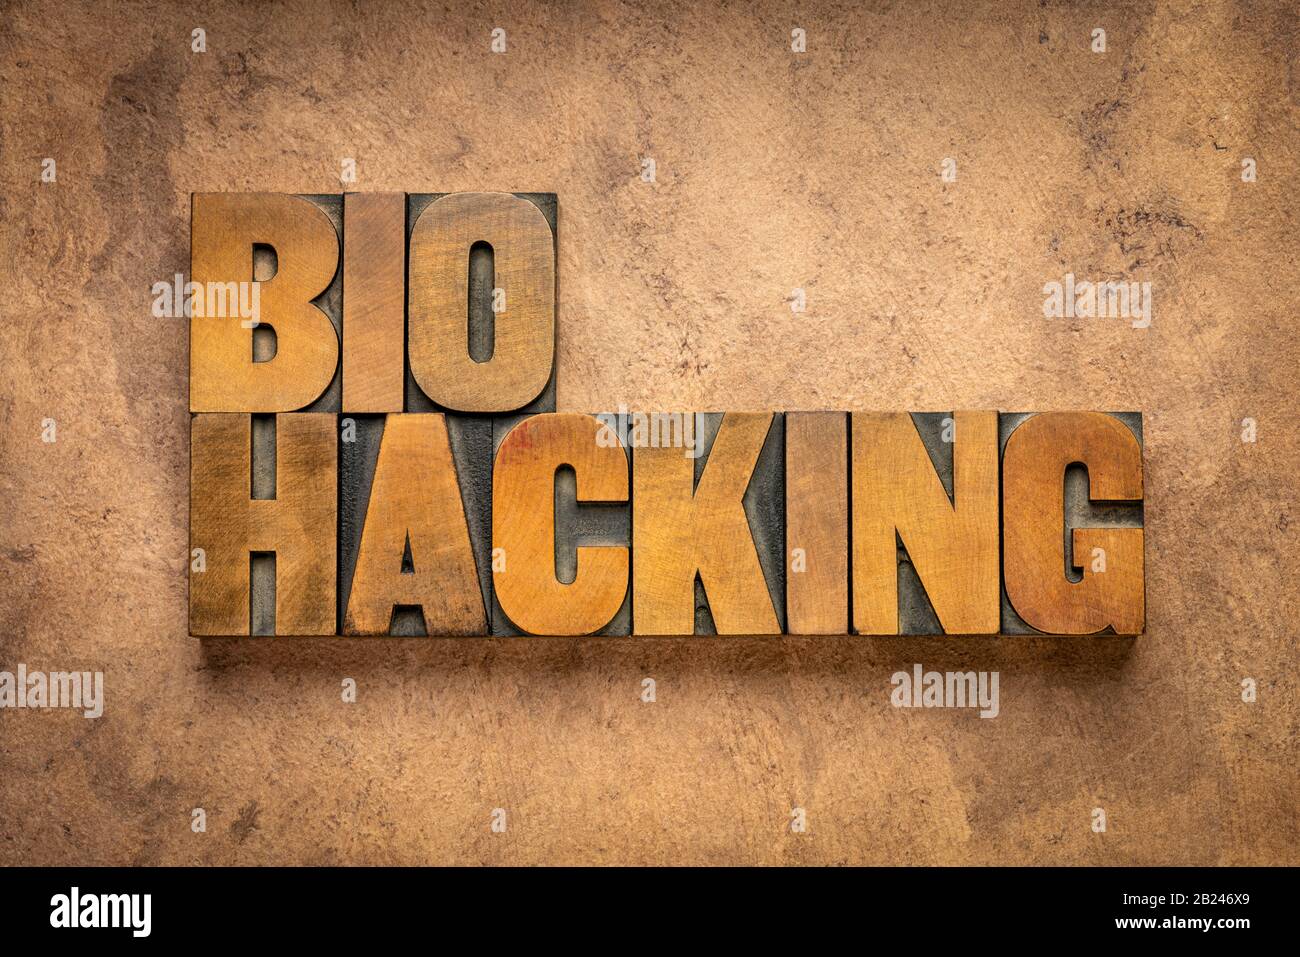 Biohacking - Verwalten der eigenen Biologie mit einer Kombination aus Medizin, Ernährungs- und elektronischen Techniken - Wort Zusammenfassung im Buchdruck Holz typ Stockfoto